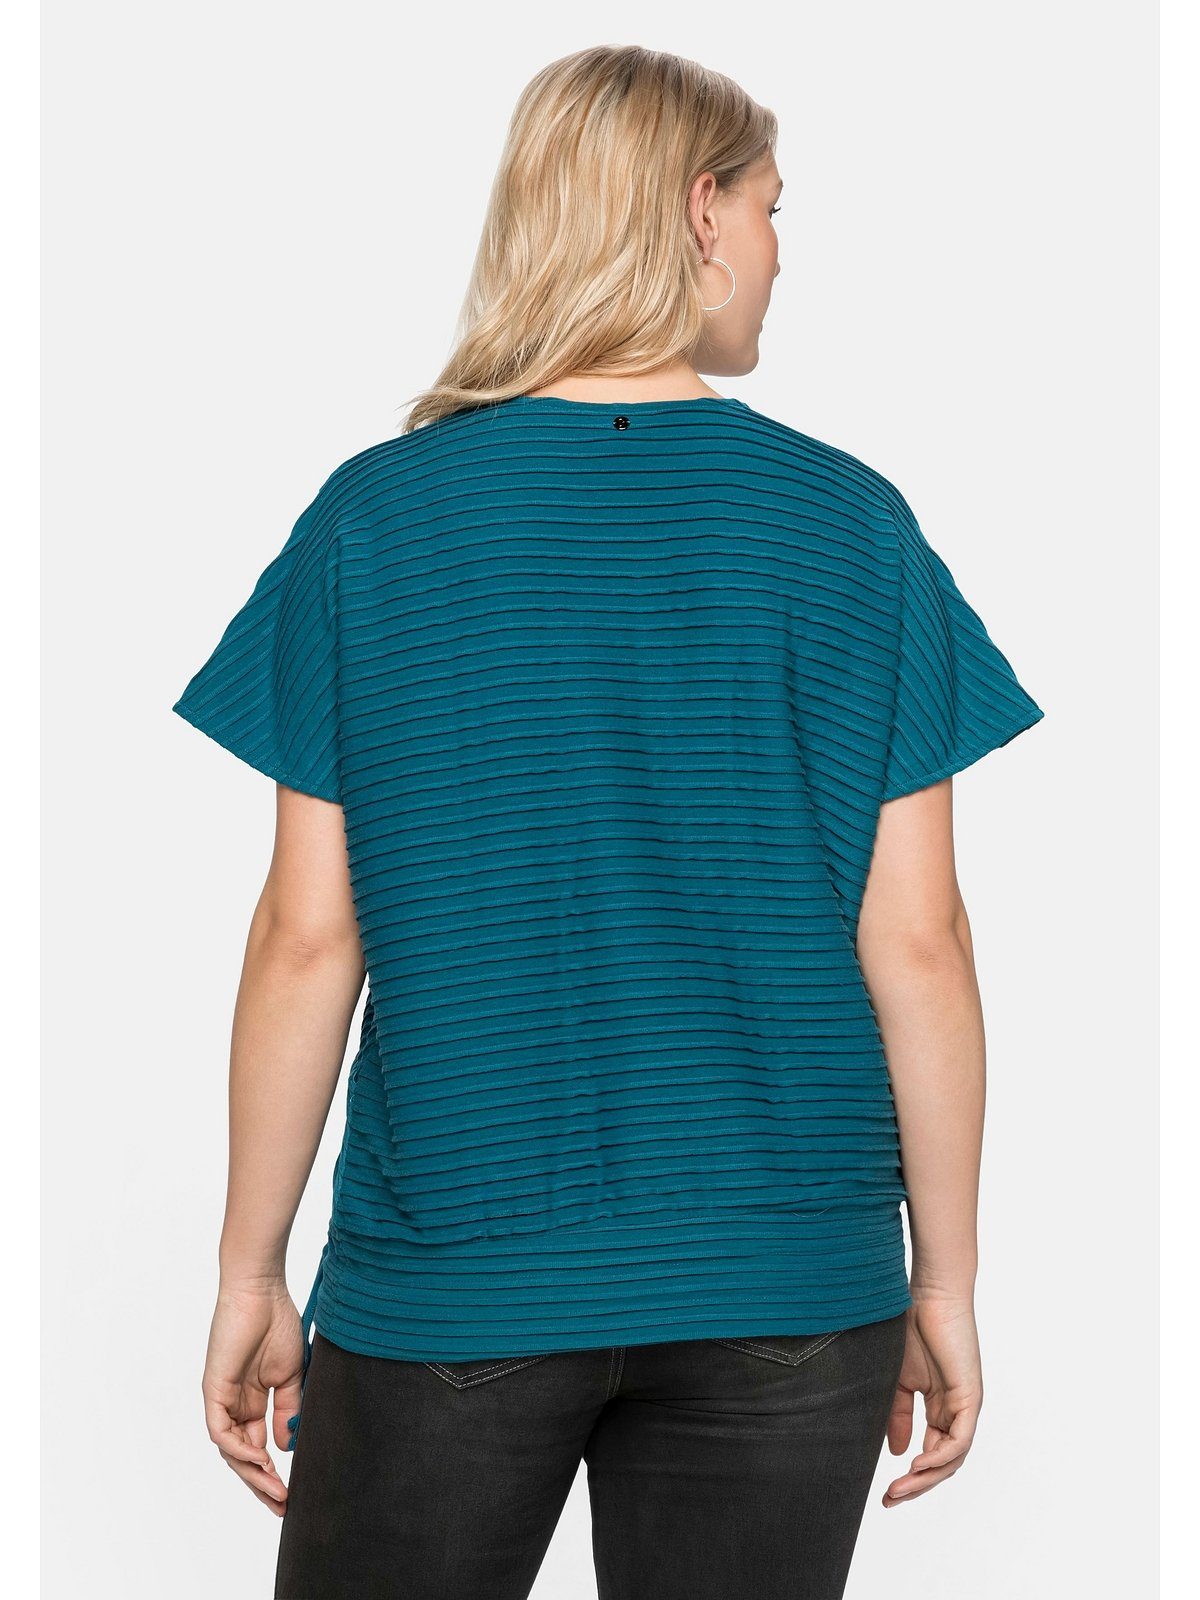 T-Shirt Wickeloptik, Große Größen mit Sheego in aufwendigen Biesen